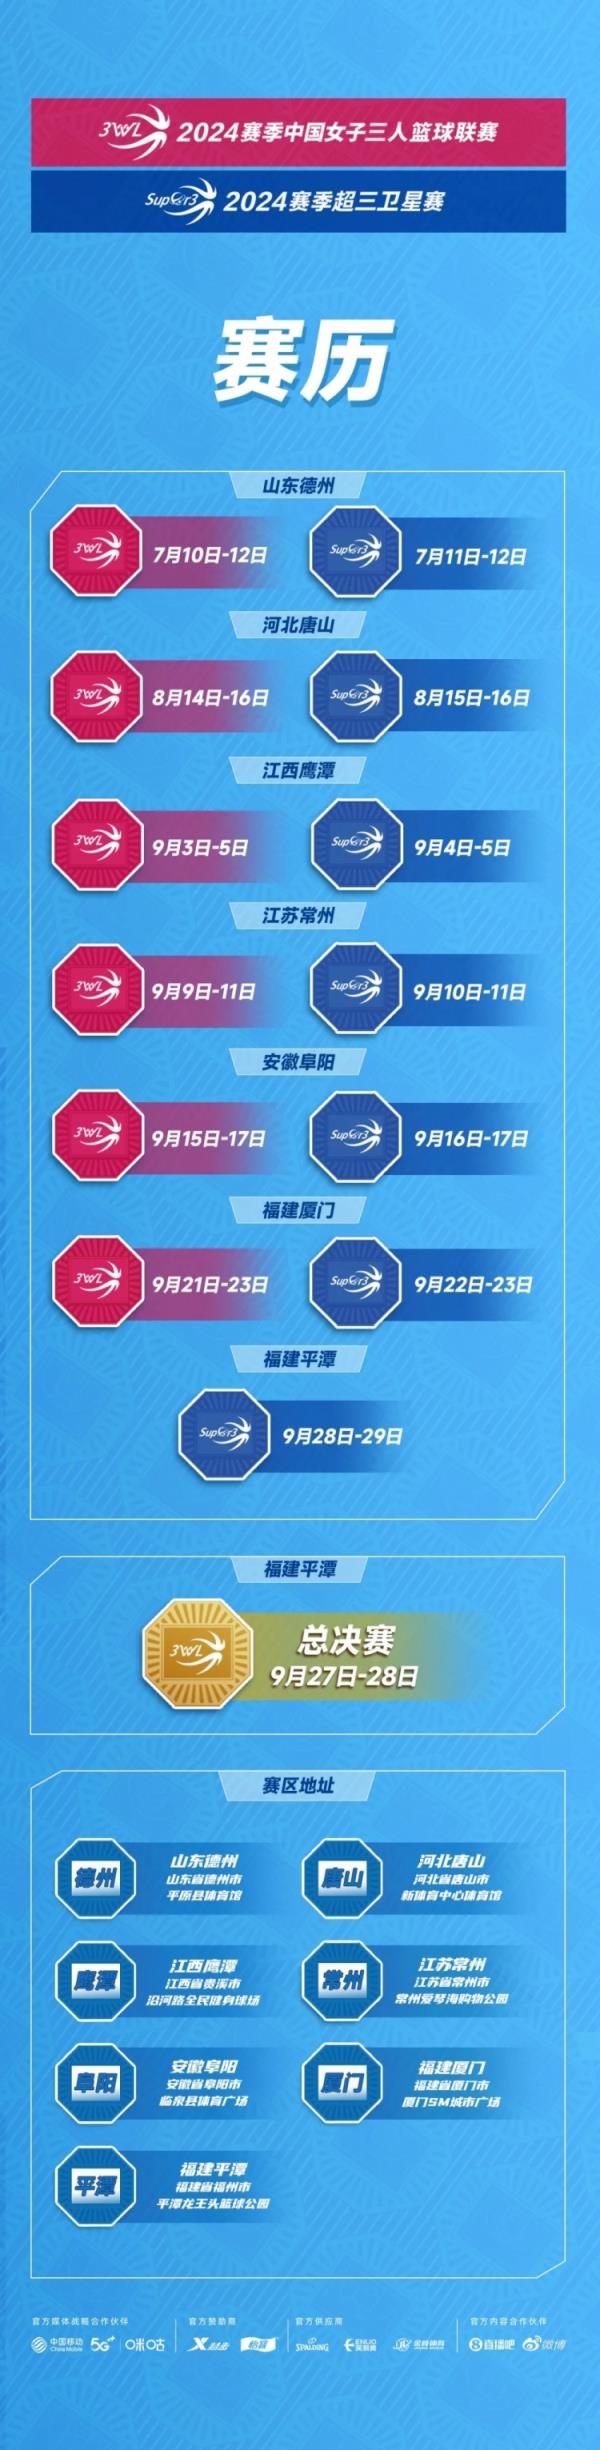 2024赛季中国女子三篮联赛及超三卫星赛赛历与参赛球队名单出炉